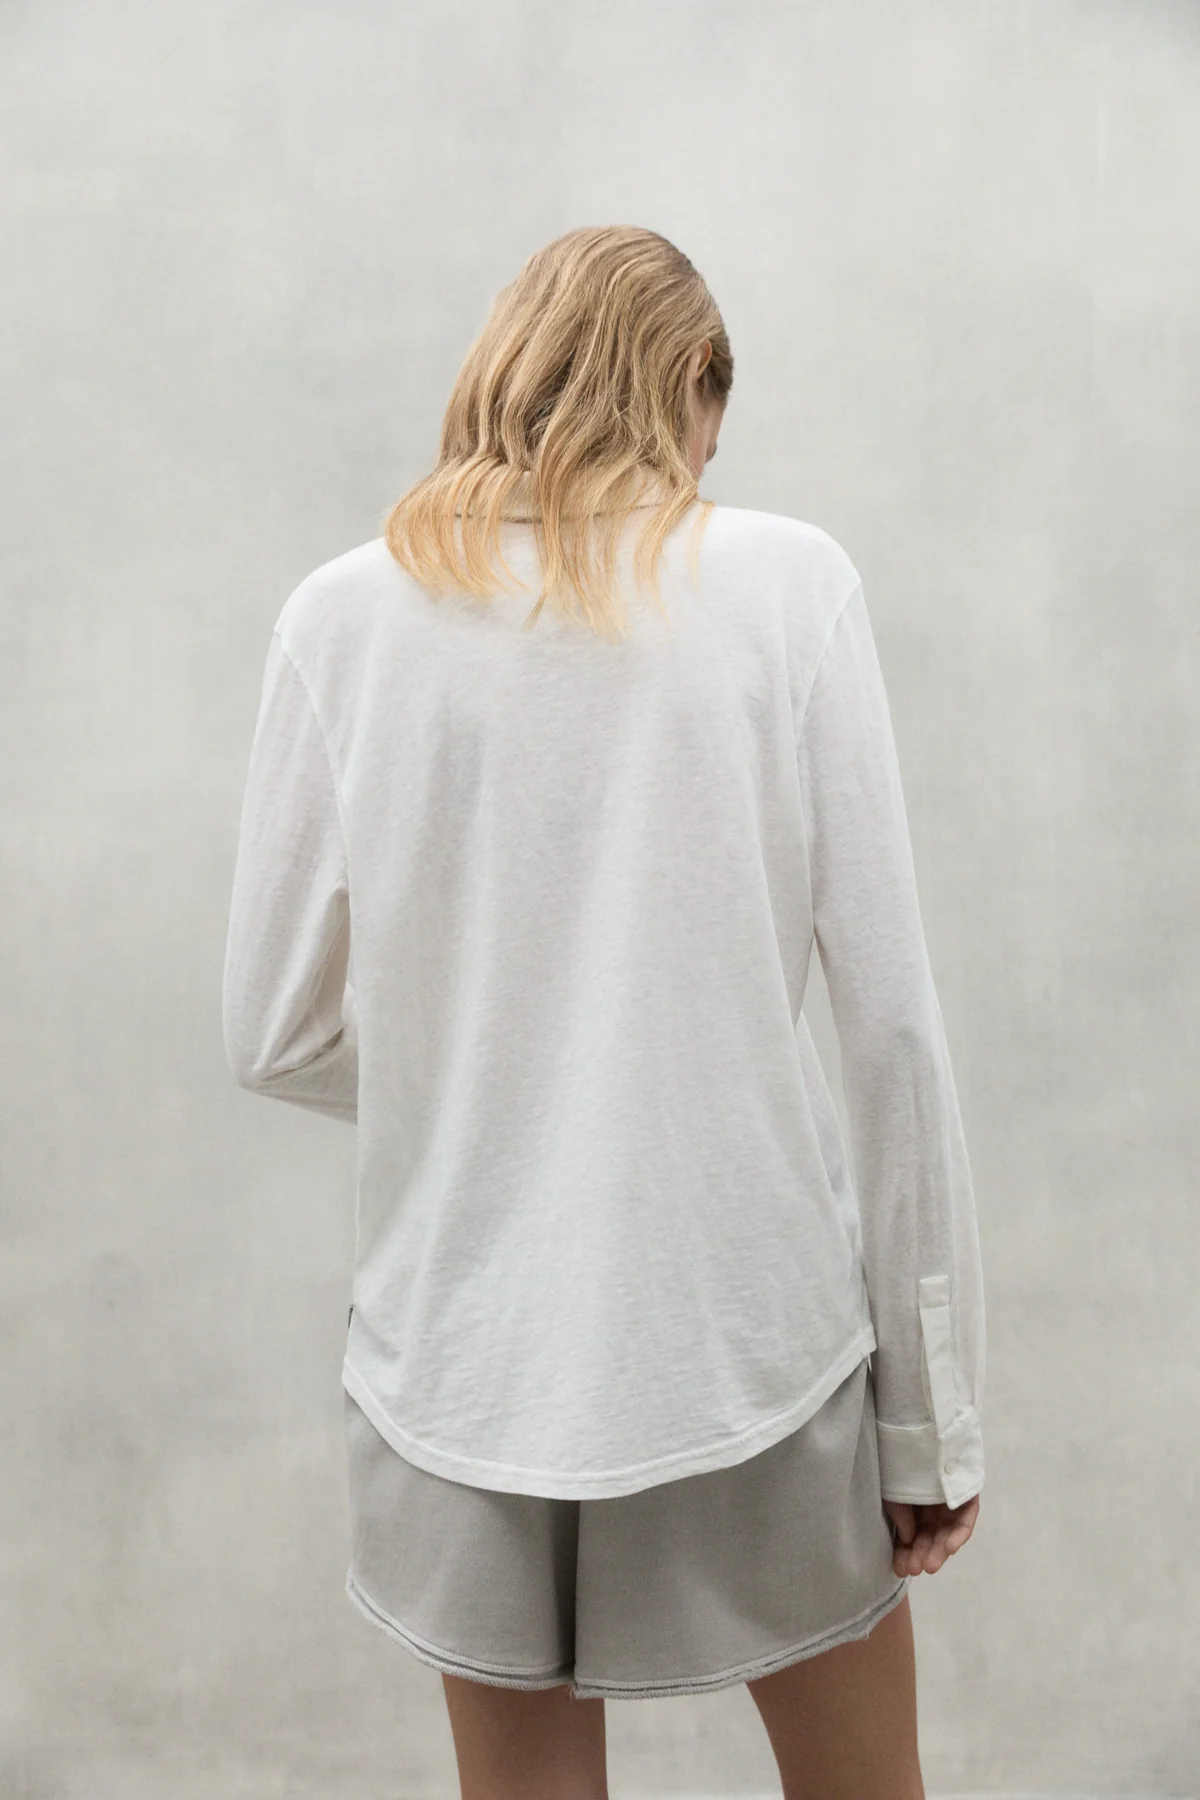 ECOALF camisa en algodón colo blanco - 2